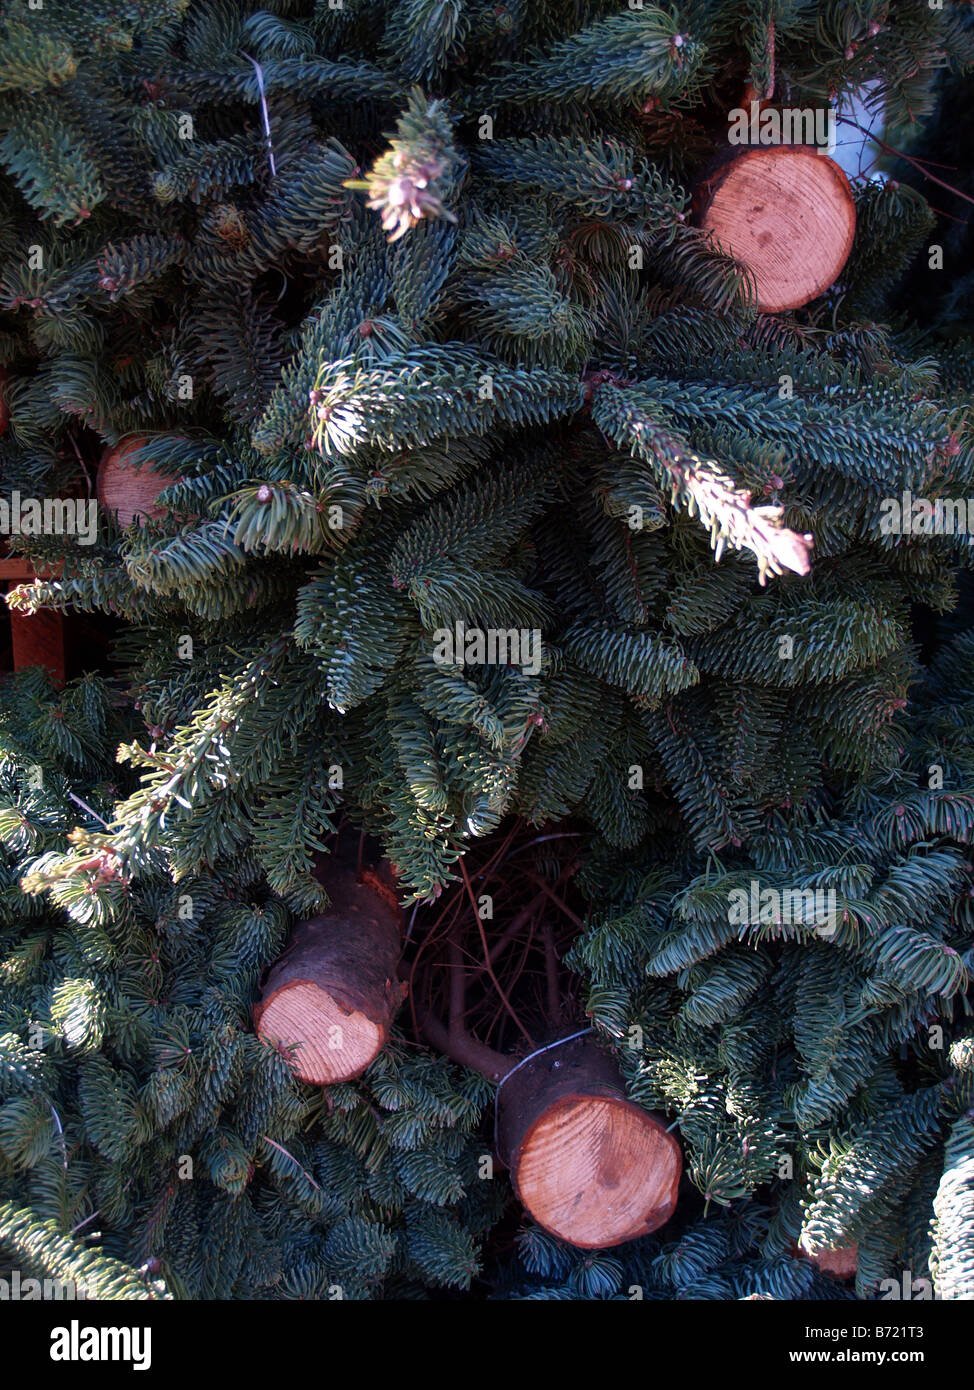 Tout juste arrivé d'arbres de Noël fraîchement coupés sont empilés et prêt à être mis en vente. Banque D'Images